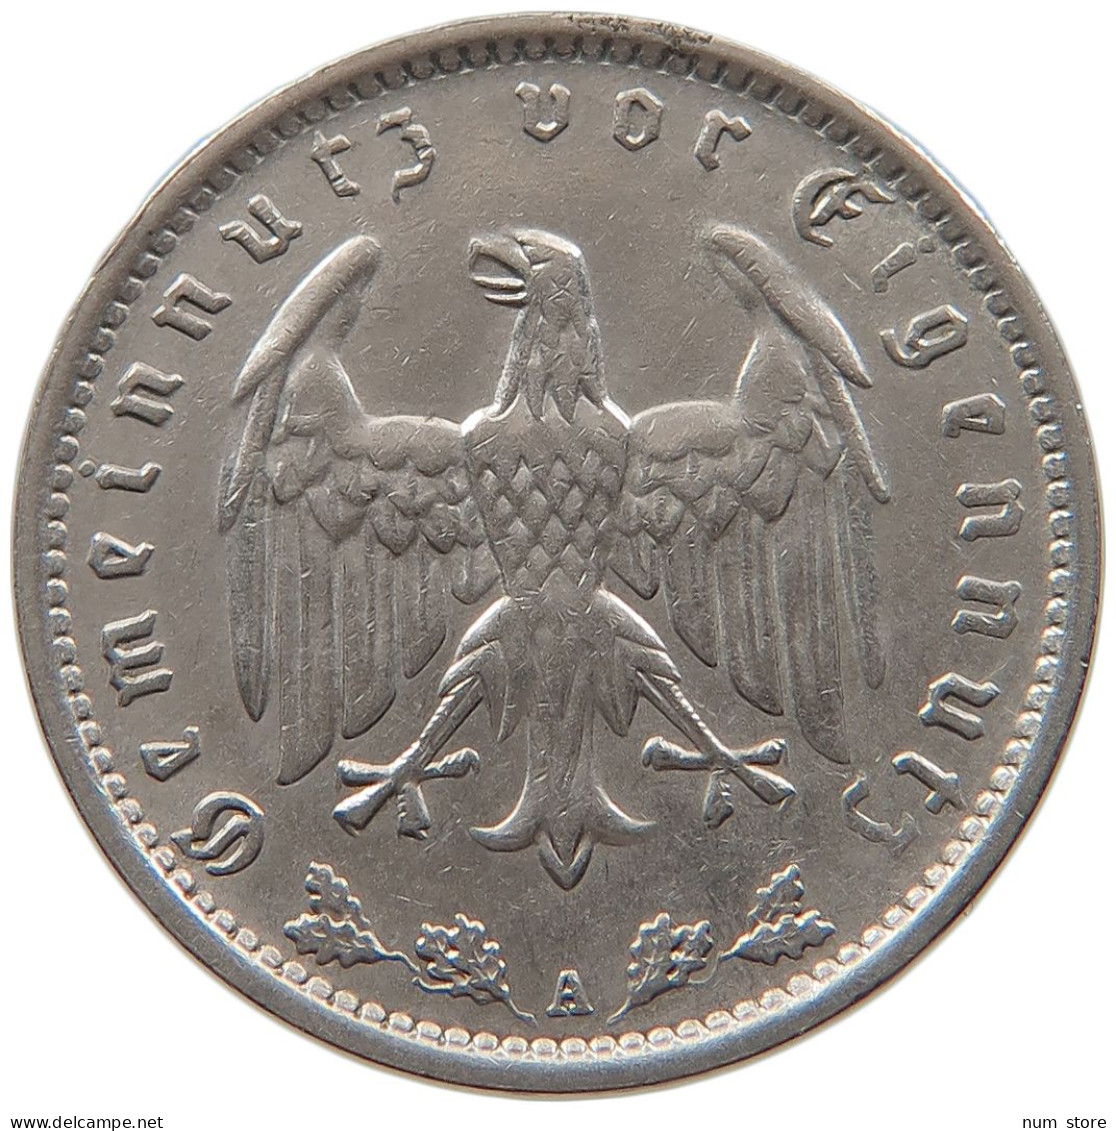 DRITTES REICH MARK 1937 A  #MA 099329 - 1 Reichsmark